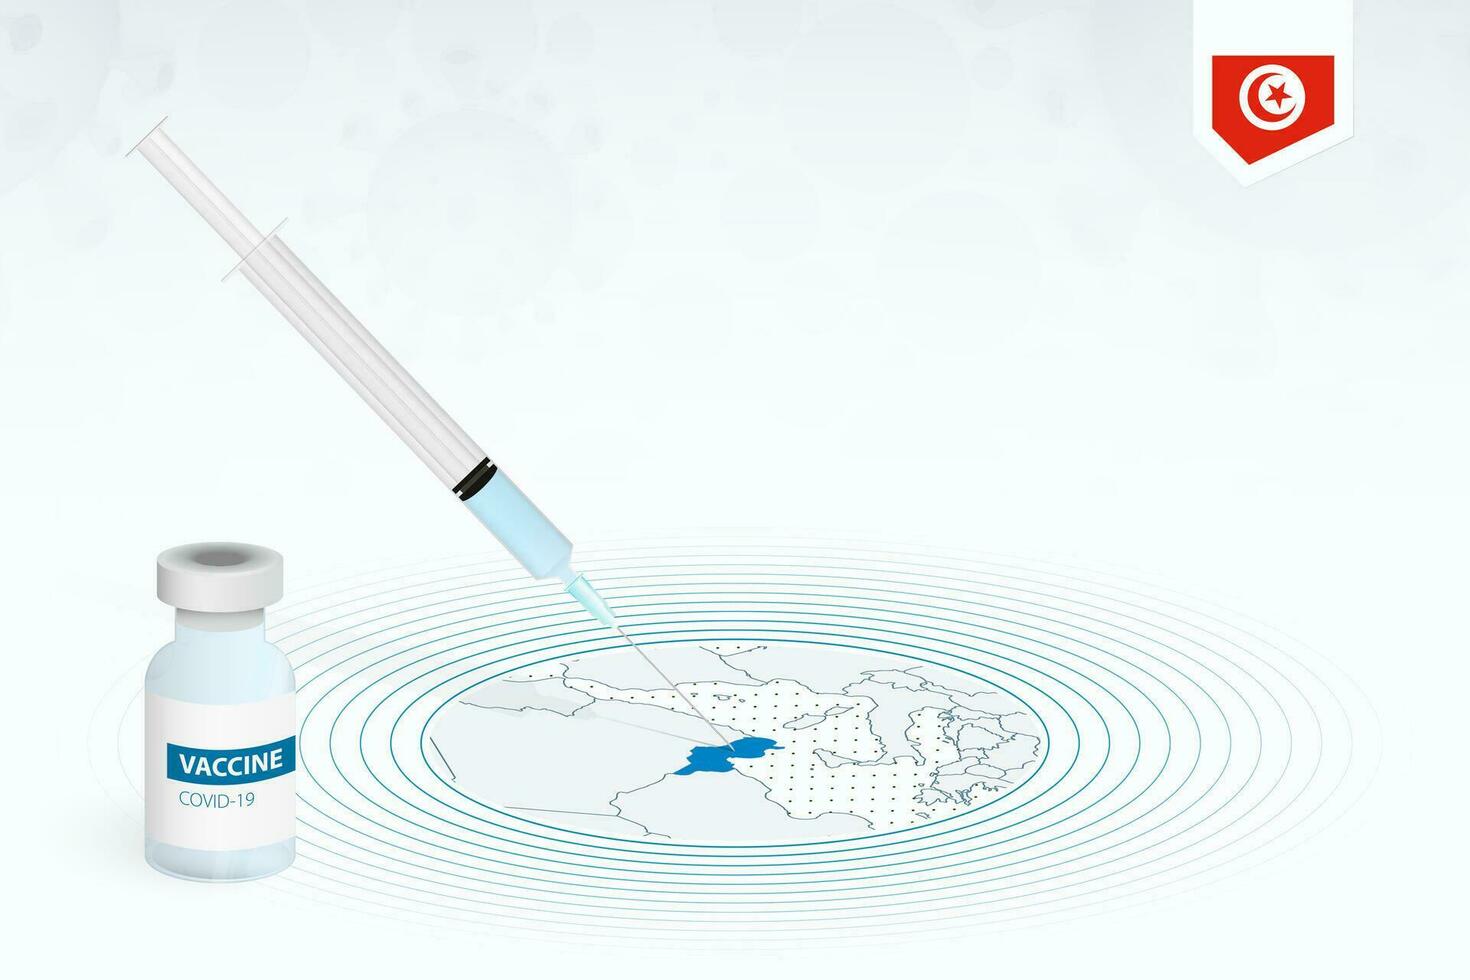 covid-19 vacinação dentro Tunísia, coronavírus vacinação ilustração com vacina garrafa e seringa injeção dentro mapa do Tunísia. vetor